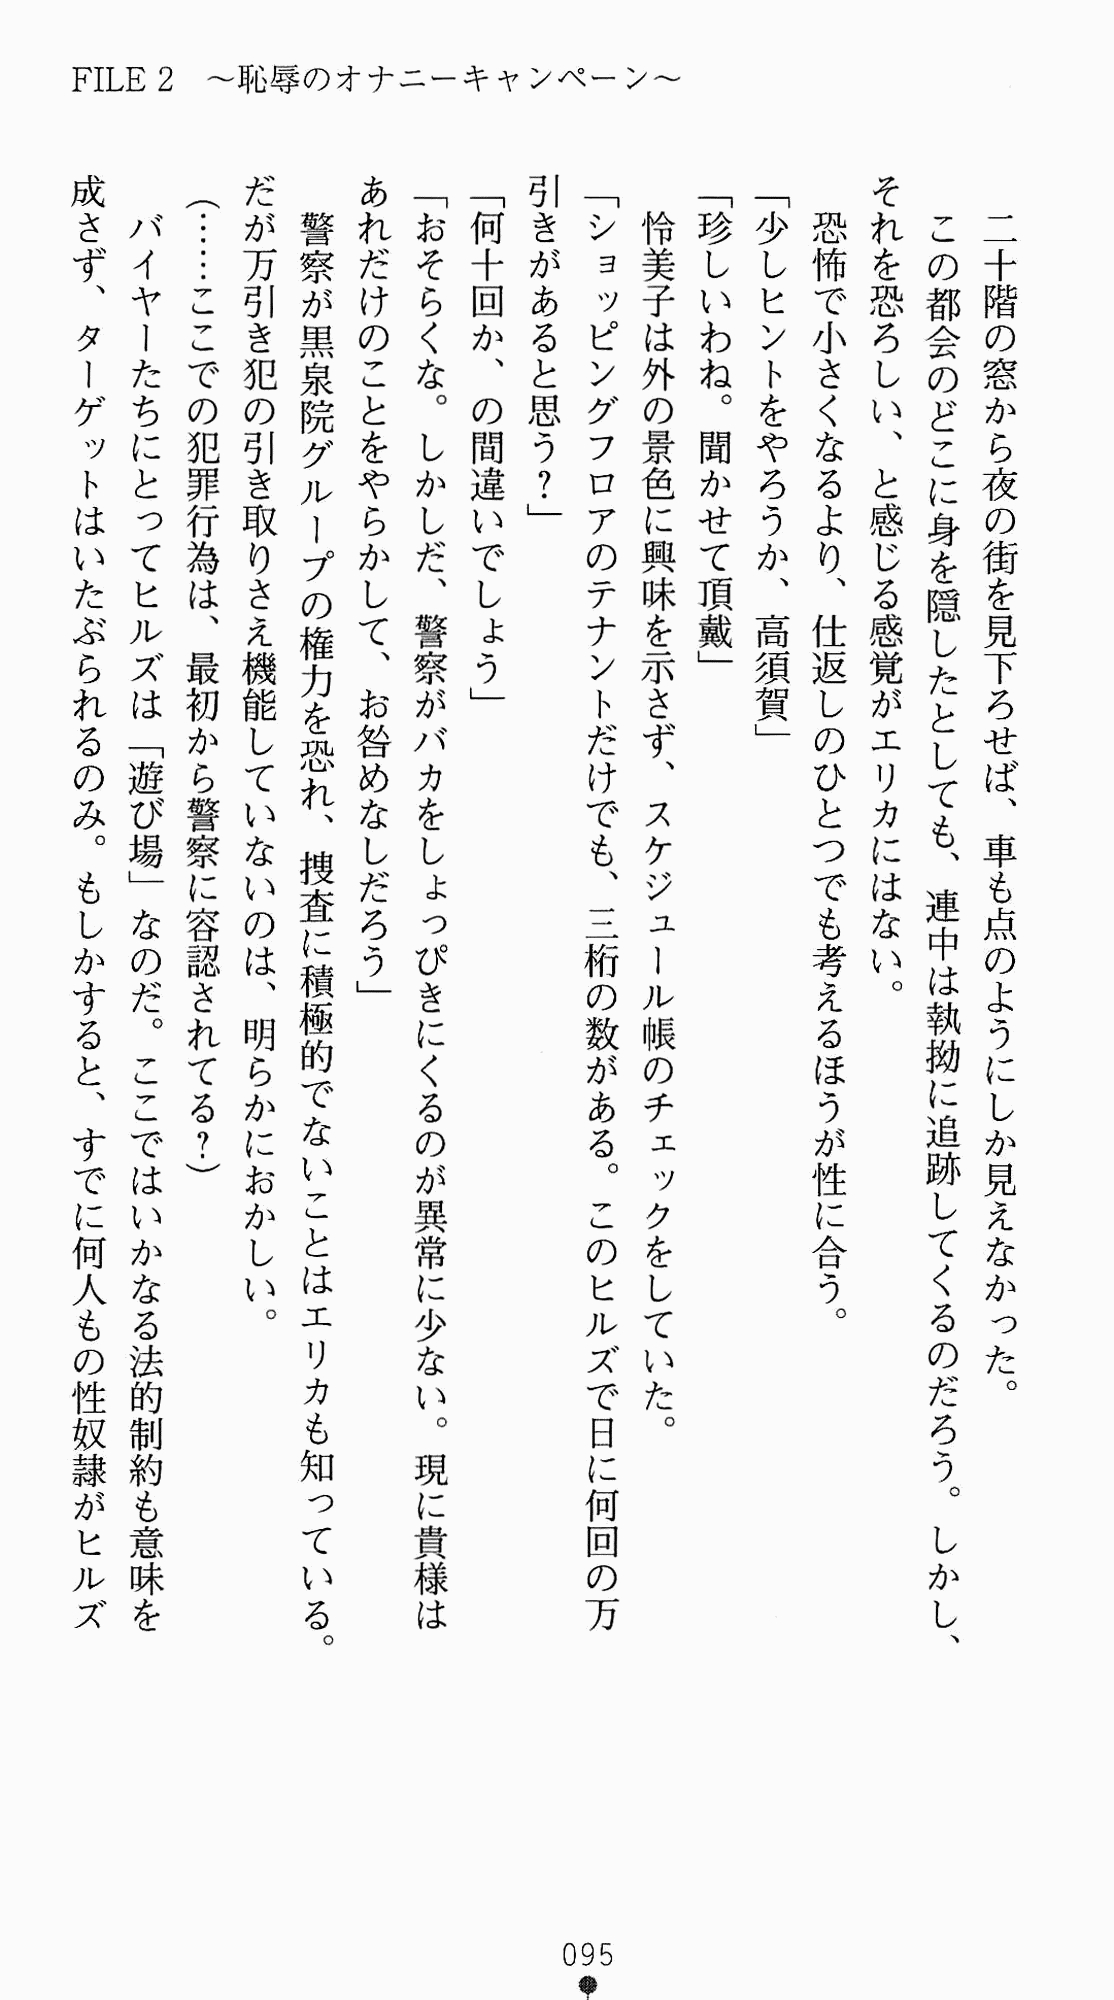 [Kagura Youko, Takahama Tarou] Shiritsu Tantei Takasuga Erika no Jikenbo 2 - Chijouha AV Satsuei 24-ji 110